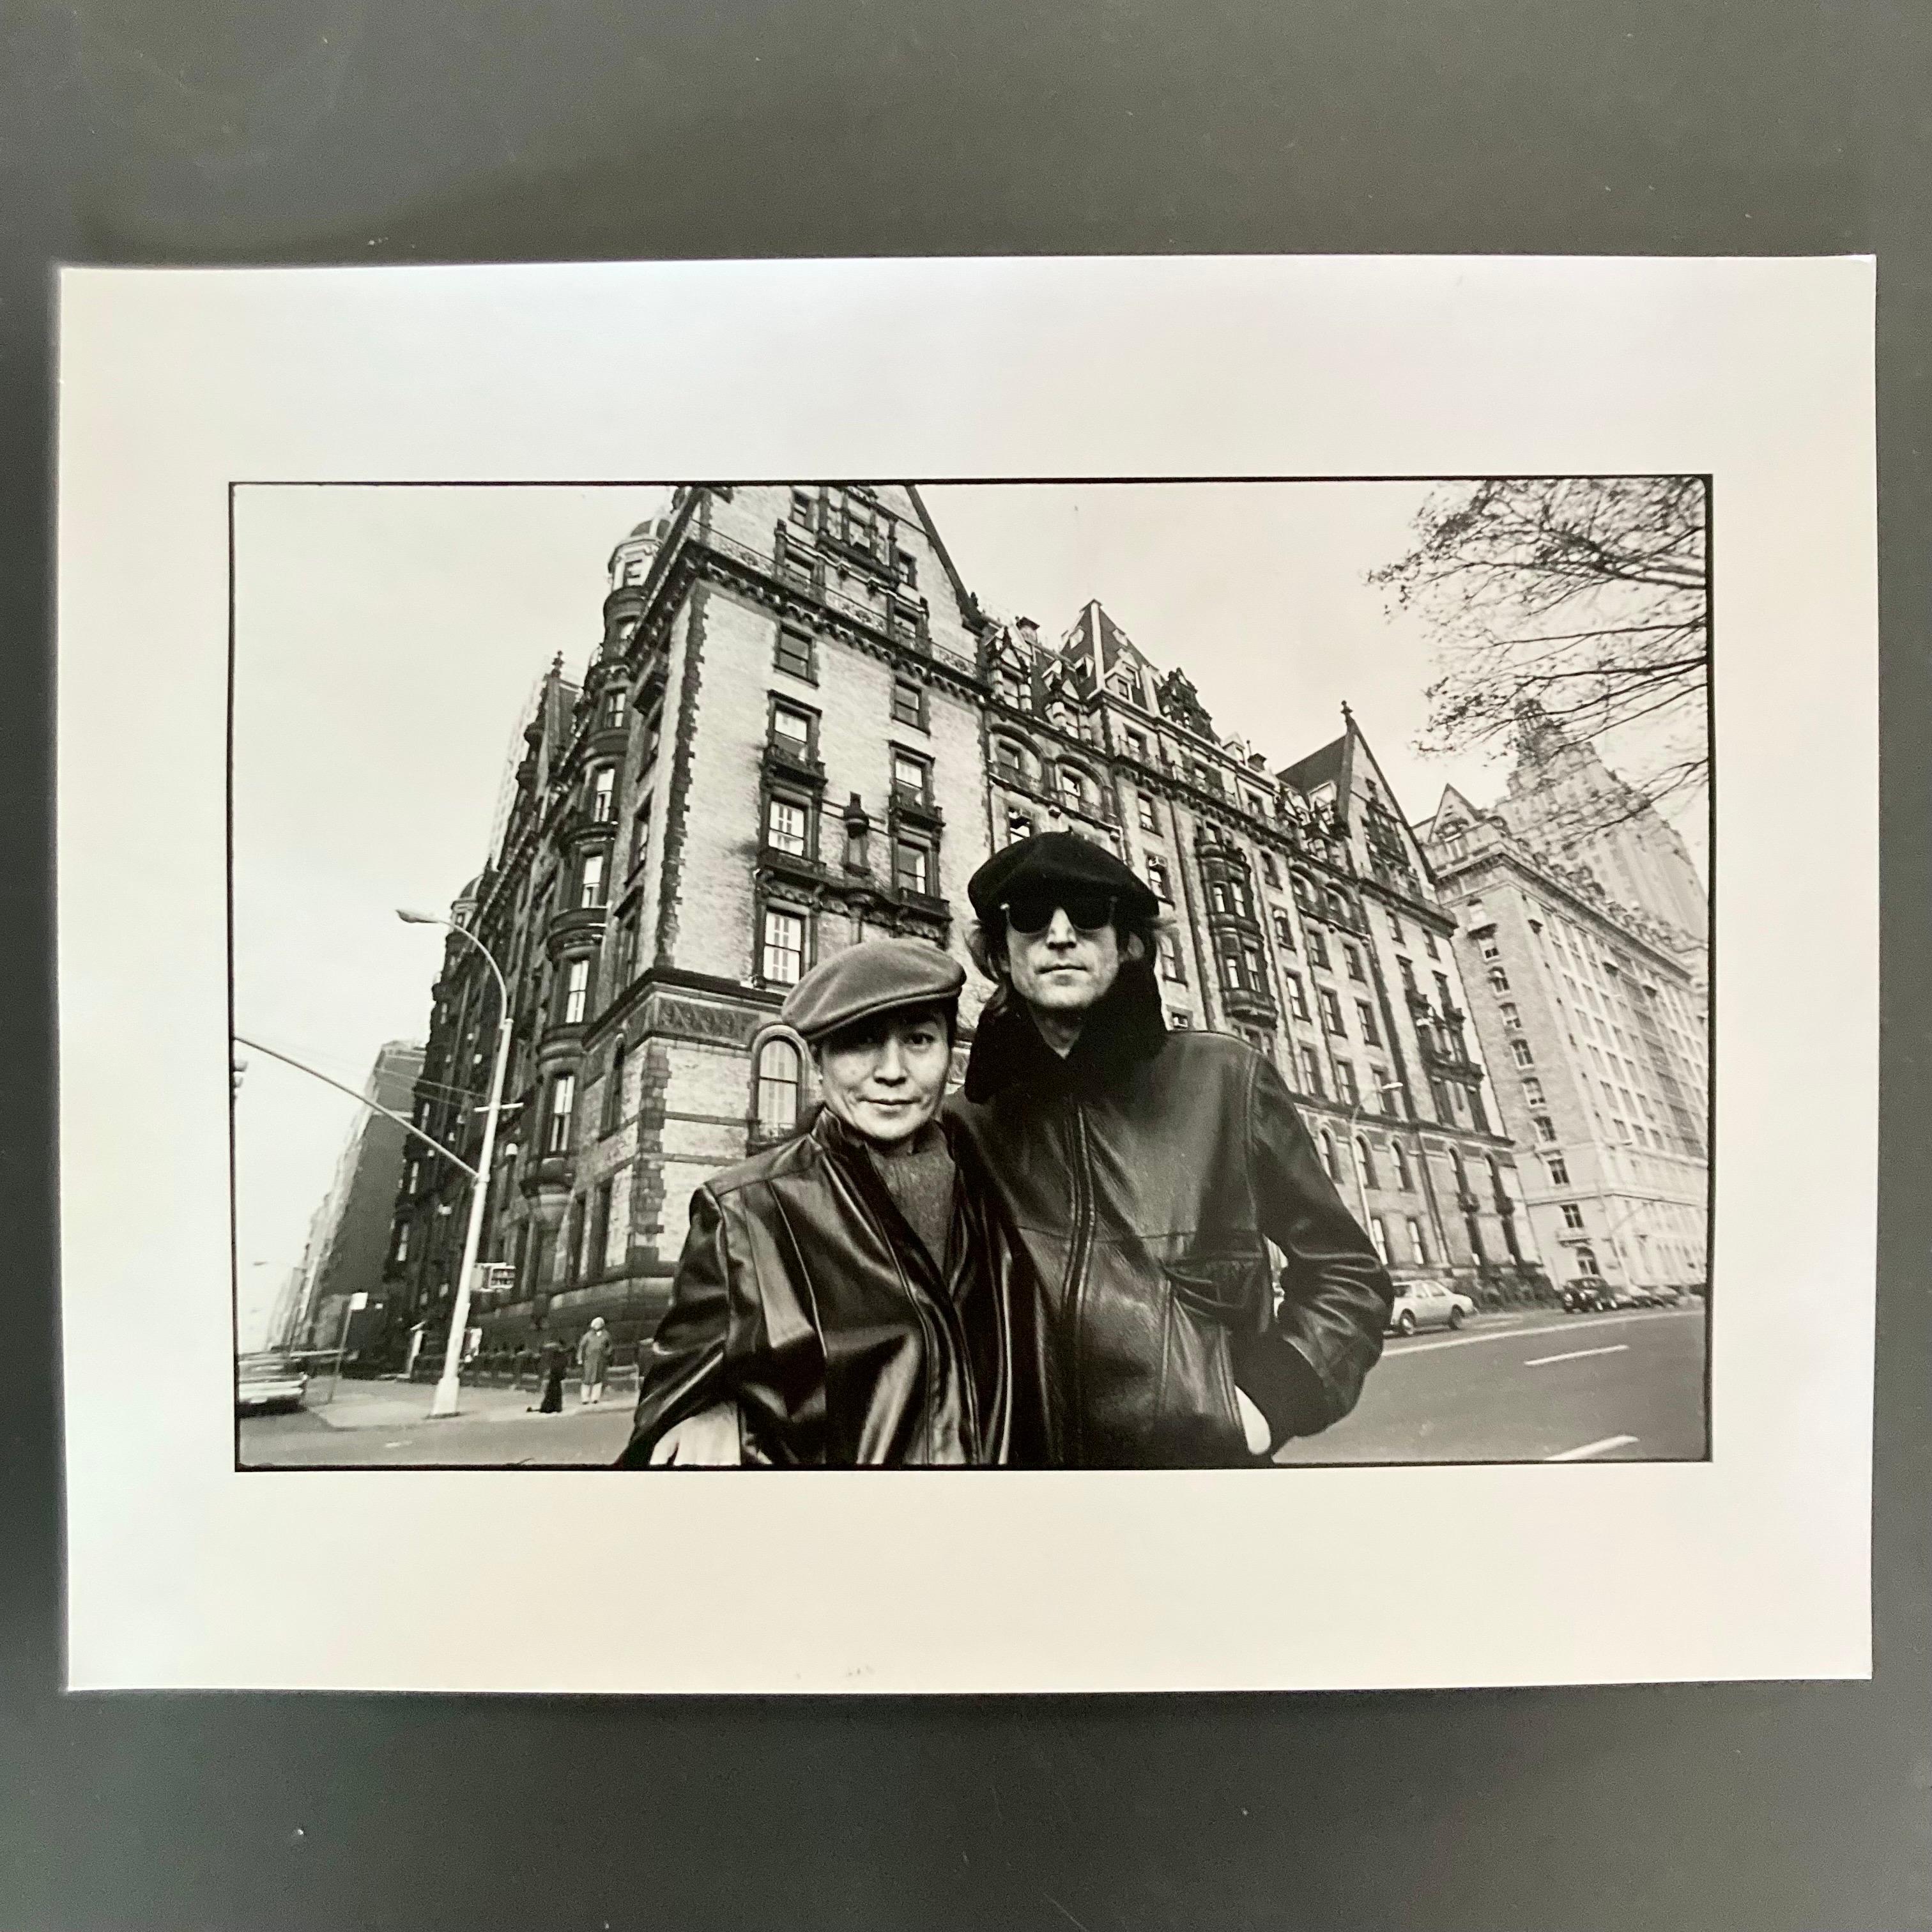 Vintage-Dunkelkammerabzug von John Lennon und Yoko Ono, aufgenommen vor dem Dakota Building am 21. November 1980. Dieser Druck ist ein originaler, handgedruckter Dunkelkammerabzug des Fotografen Allan Tannenbaum. 

Dieser 11x14" große Vintage-Druck